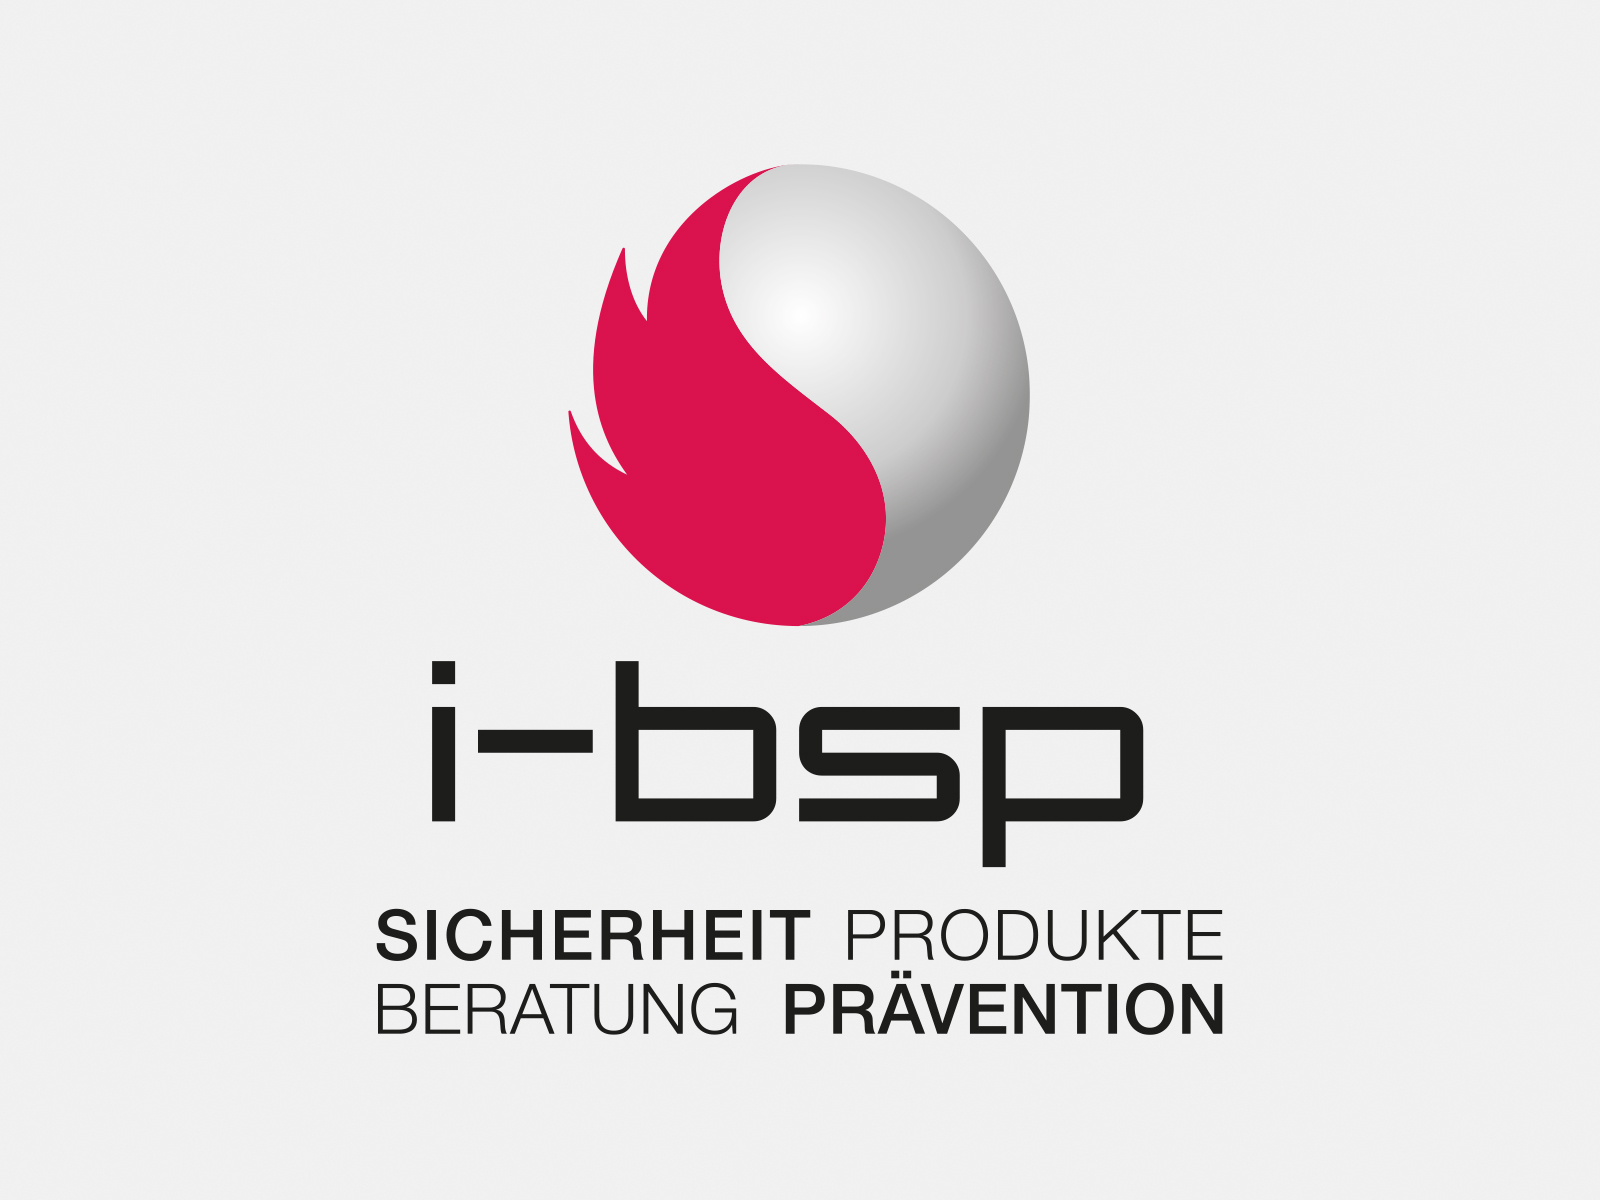 Logo i-bsp in Farbe auf grauem Hintergrund